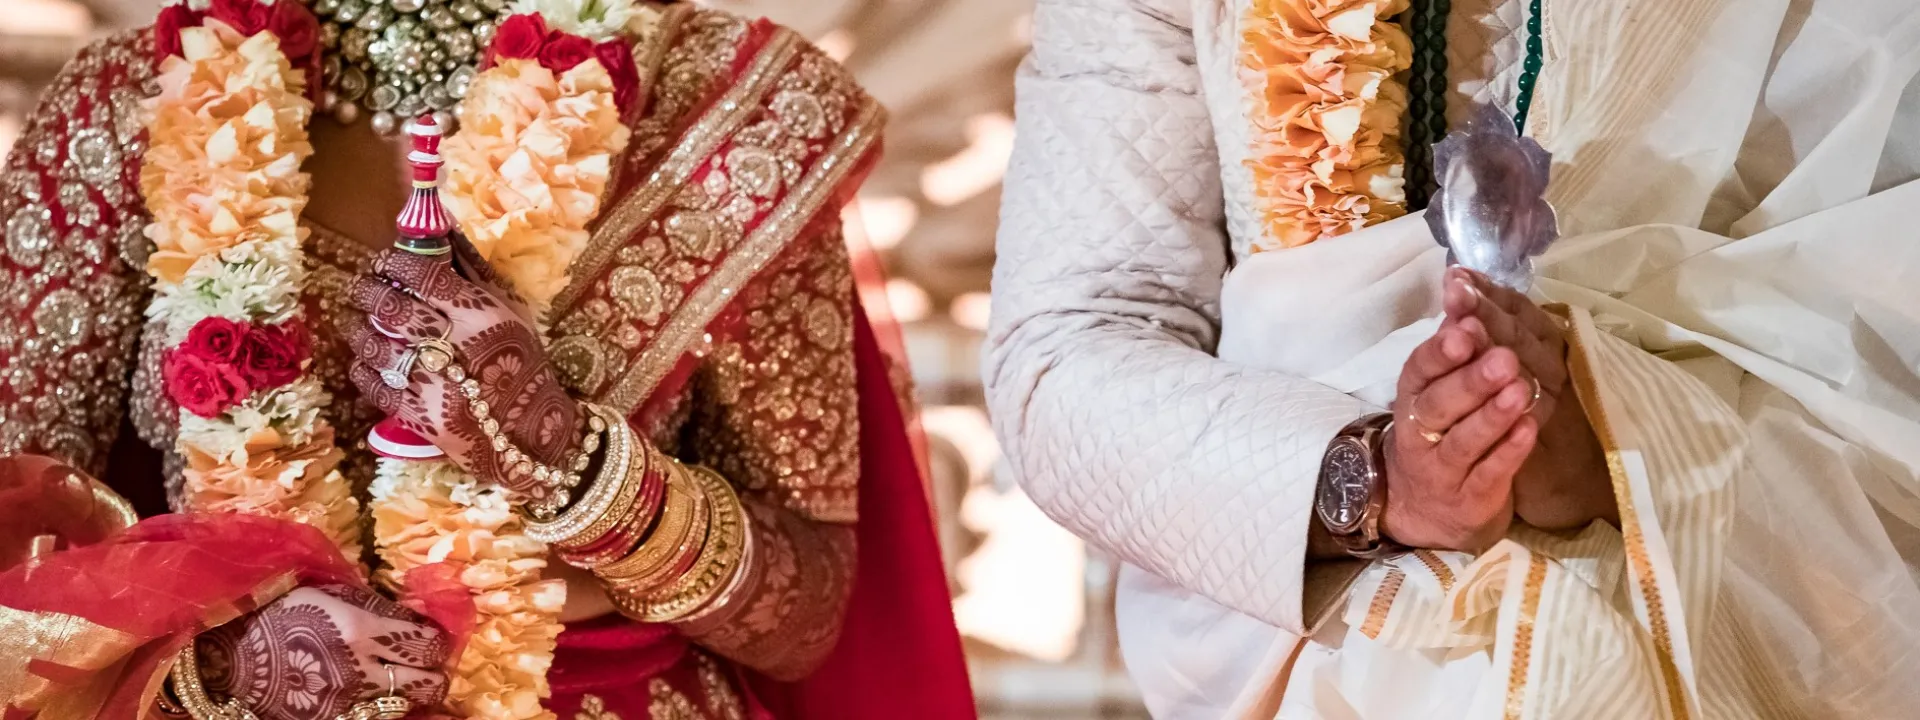 Hindu wedding extravaganza